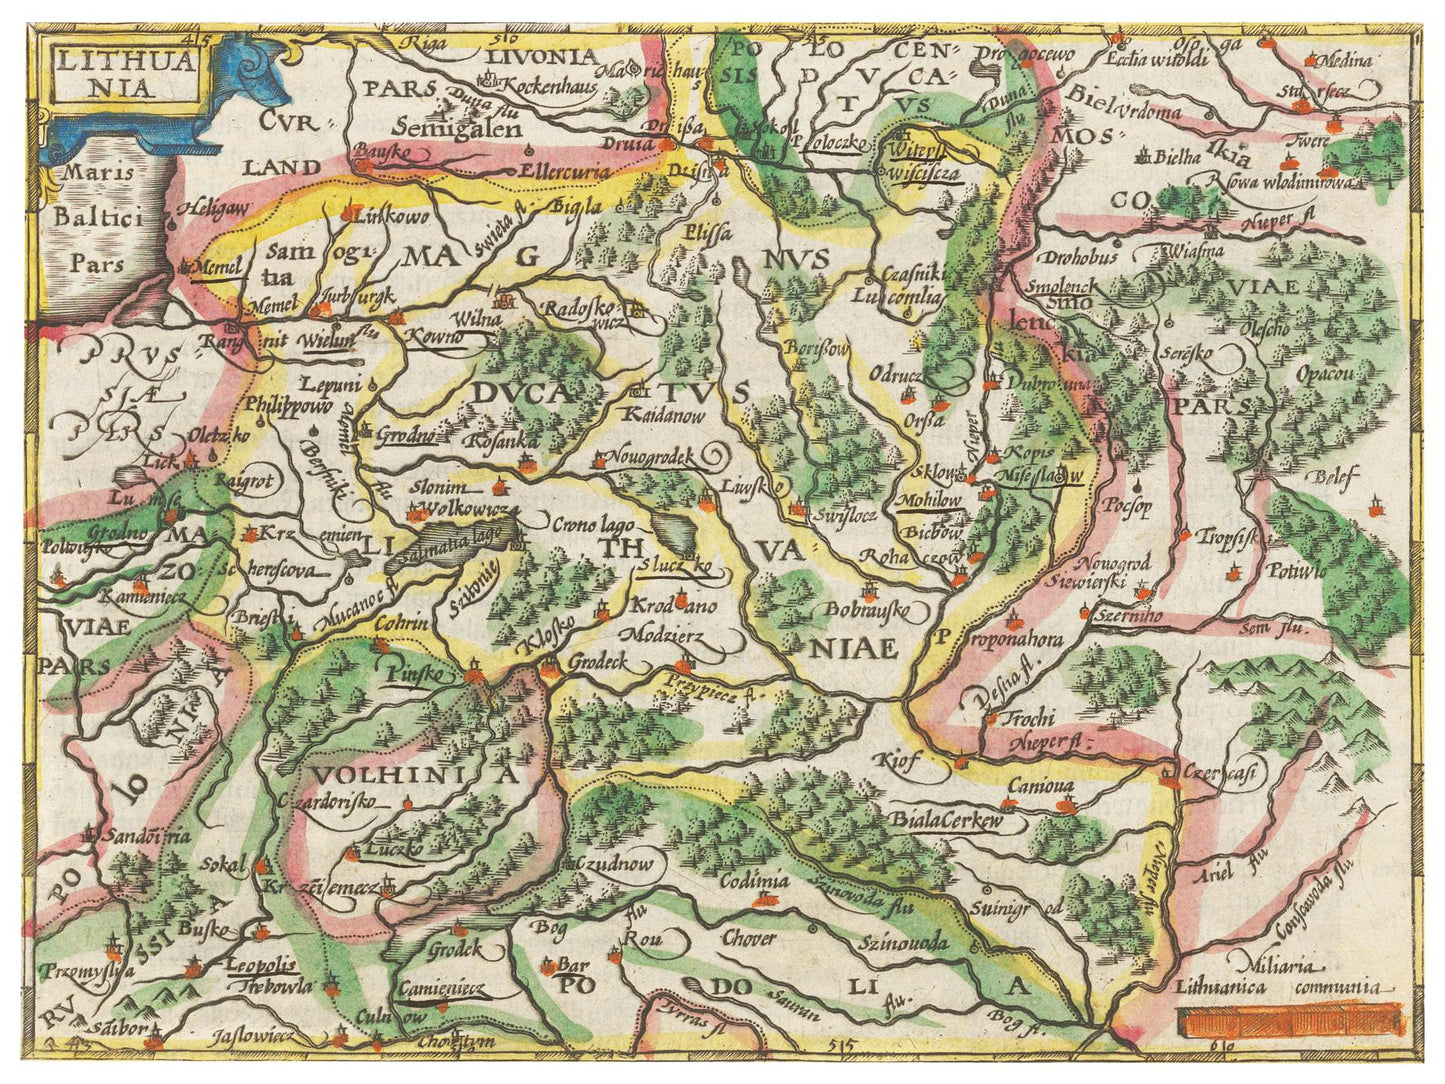 Historische Landkarte Litauen um 1609